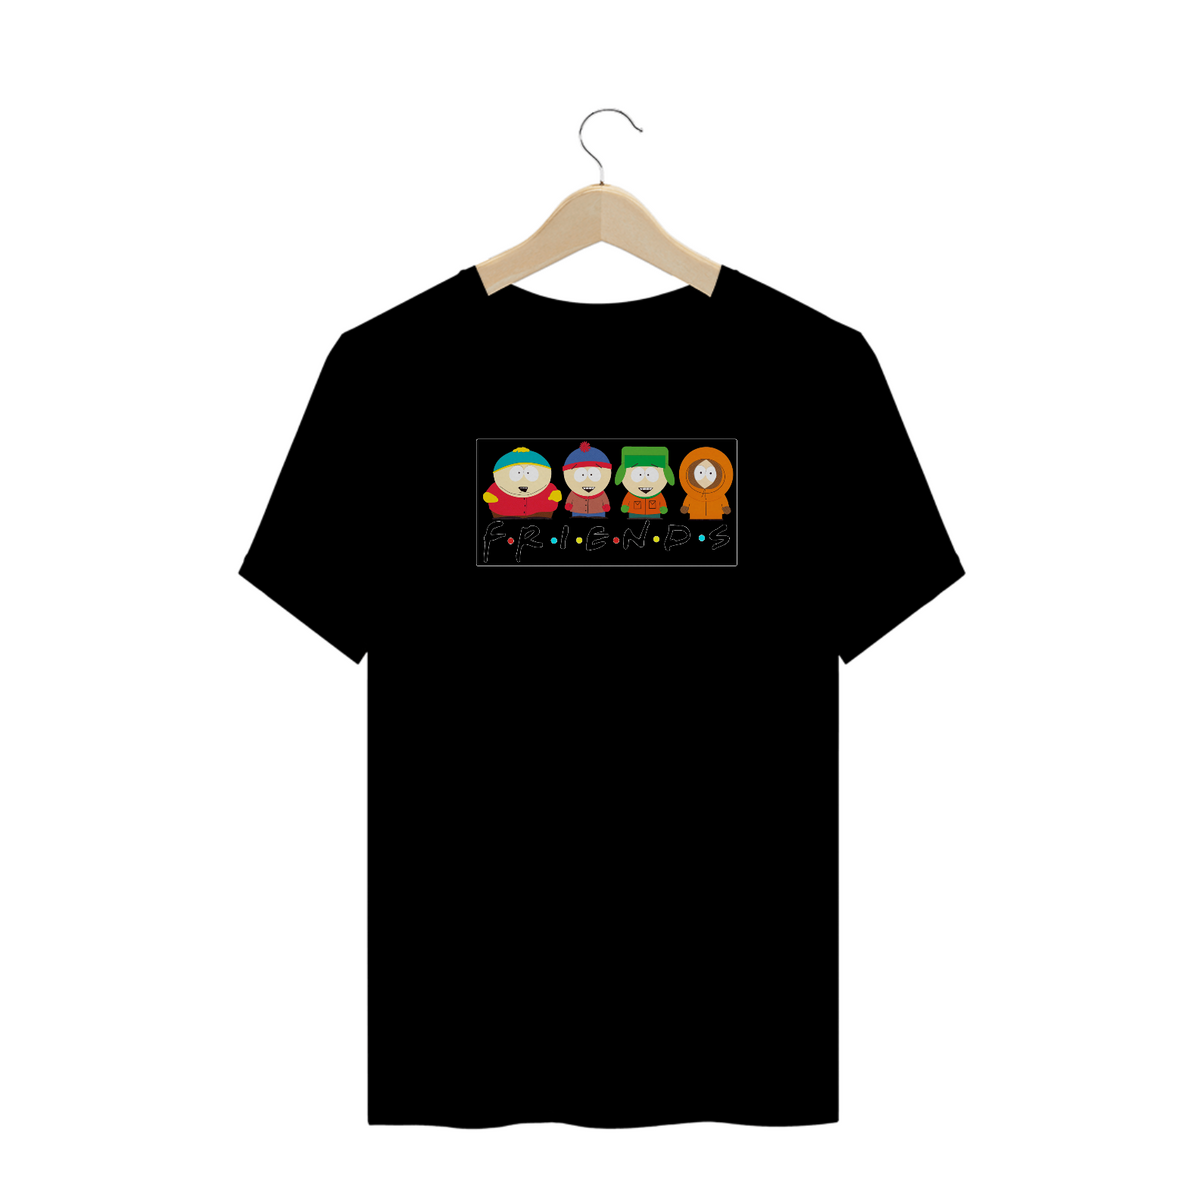 Nome do produto: T-Shirt South Park Friends